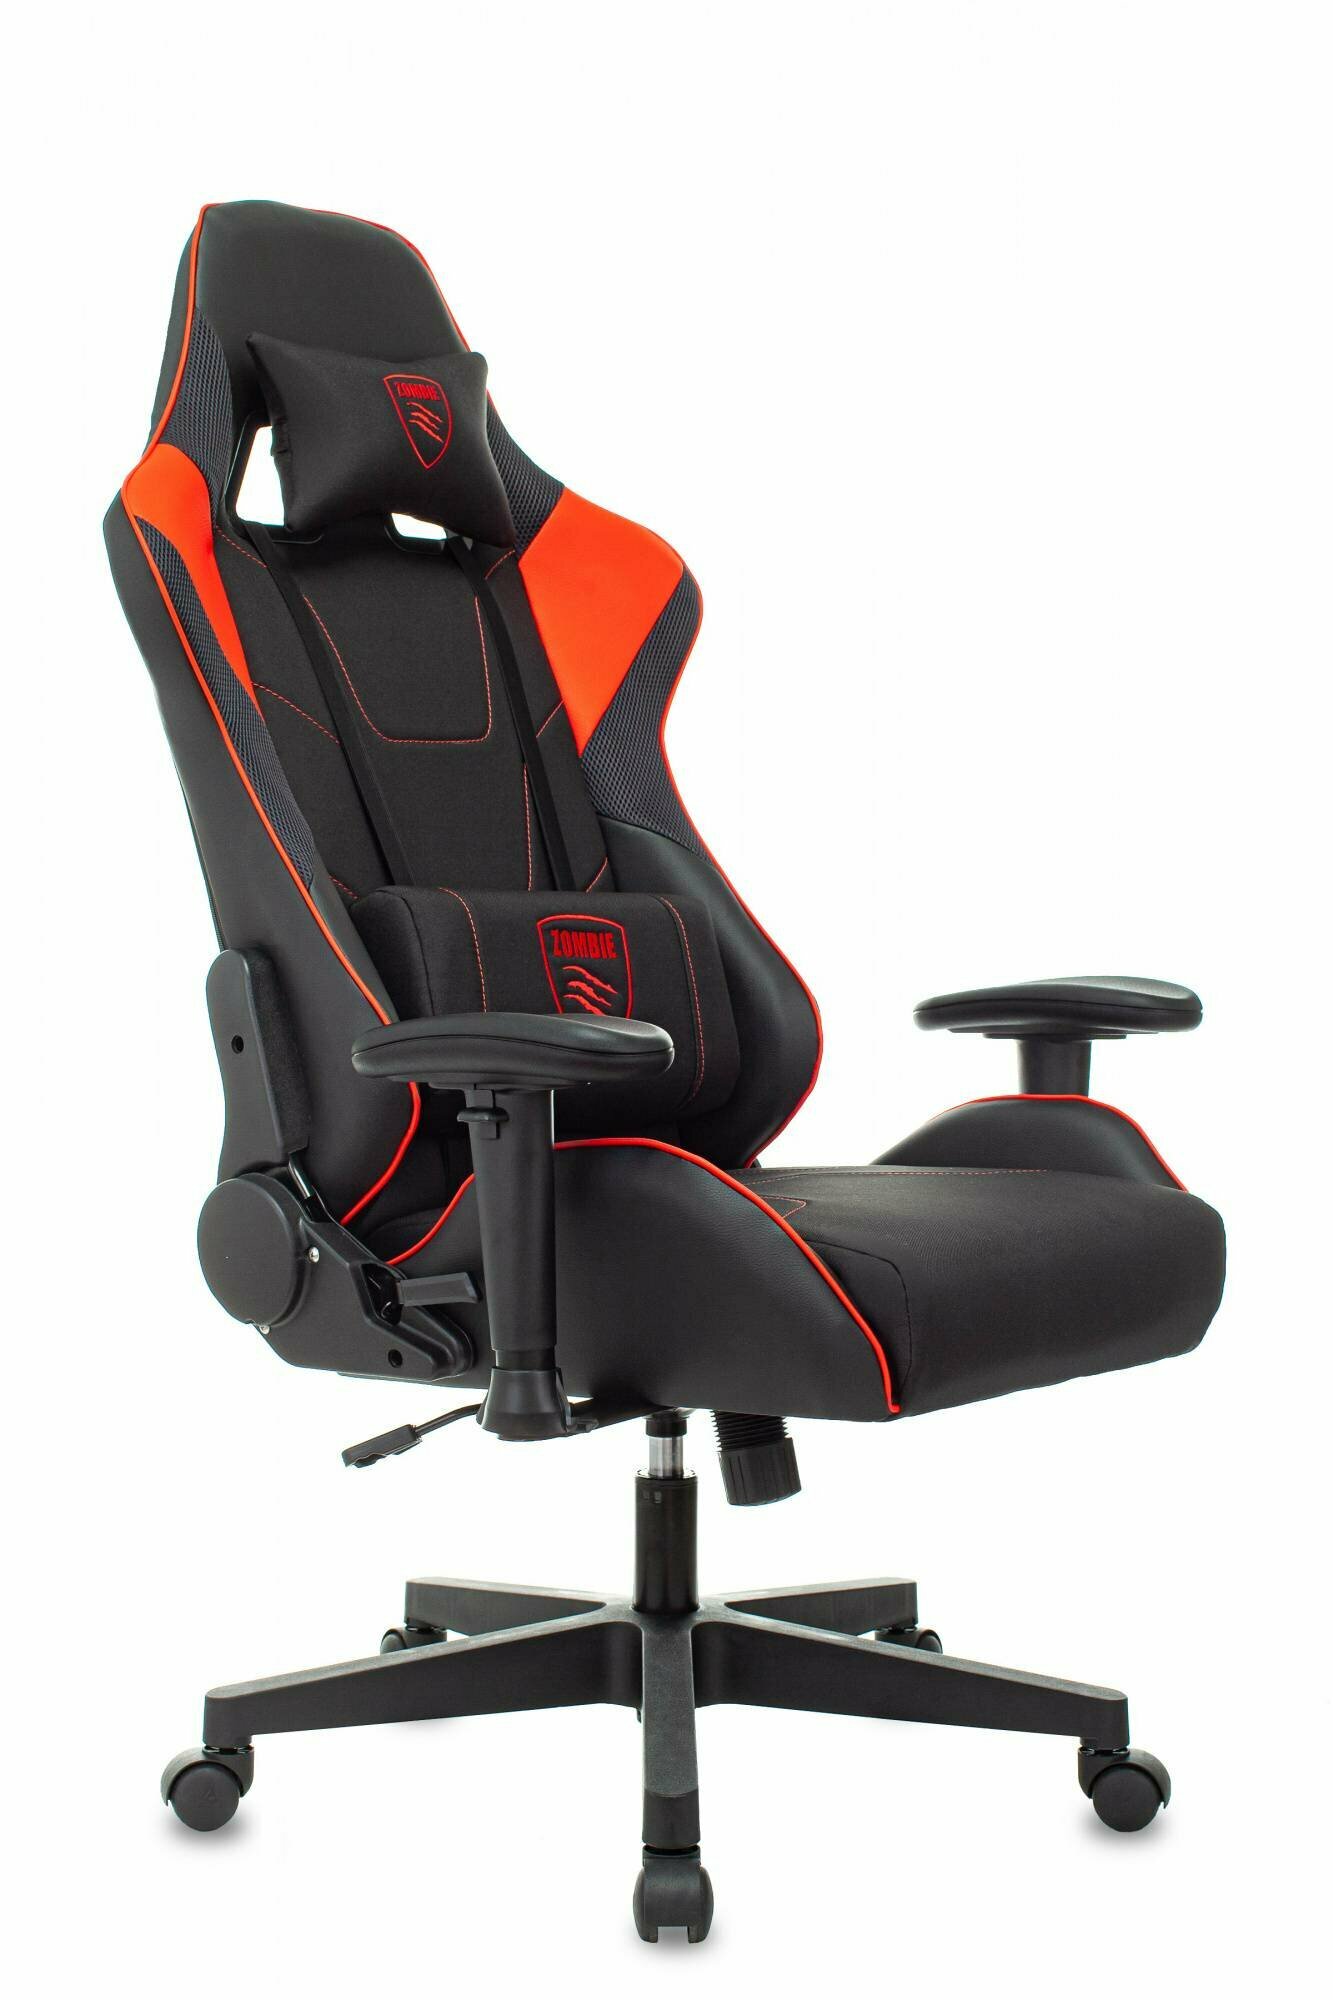 Кресло игровое Zombie Thunder 1, обивка: текстиль/эко.кожа, цвет: черный/красный